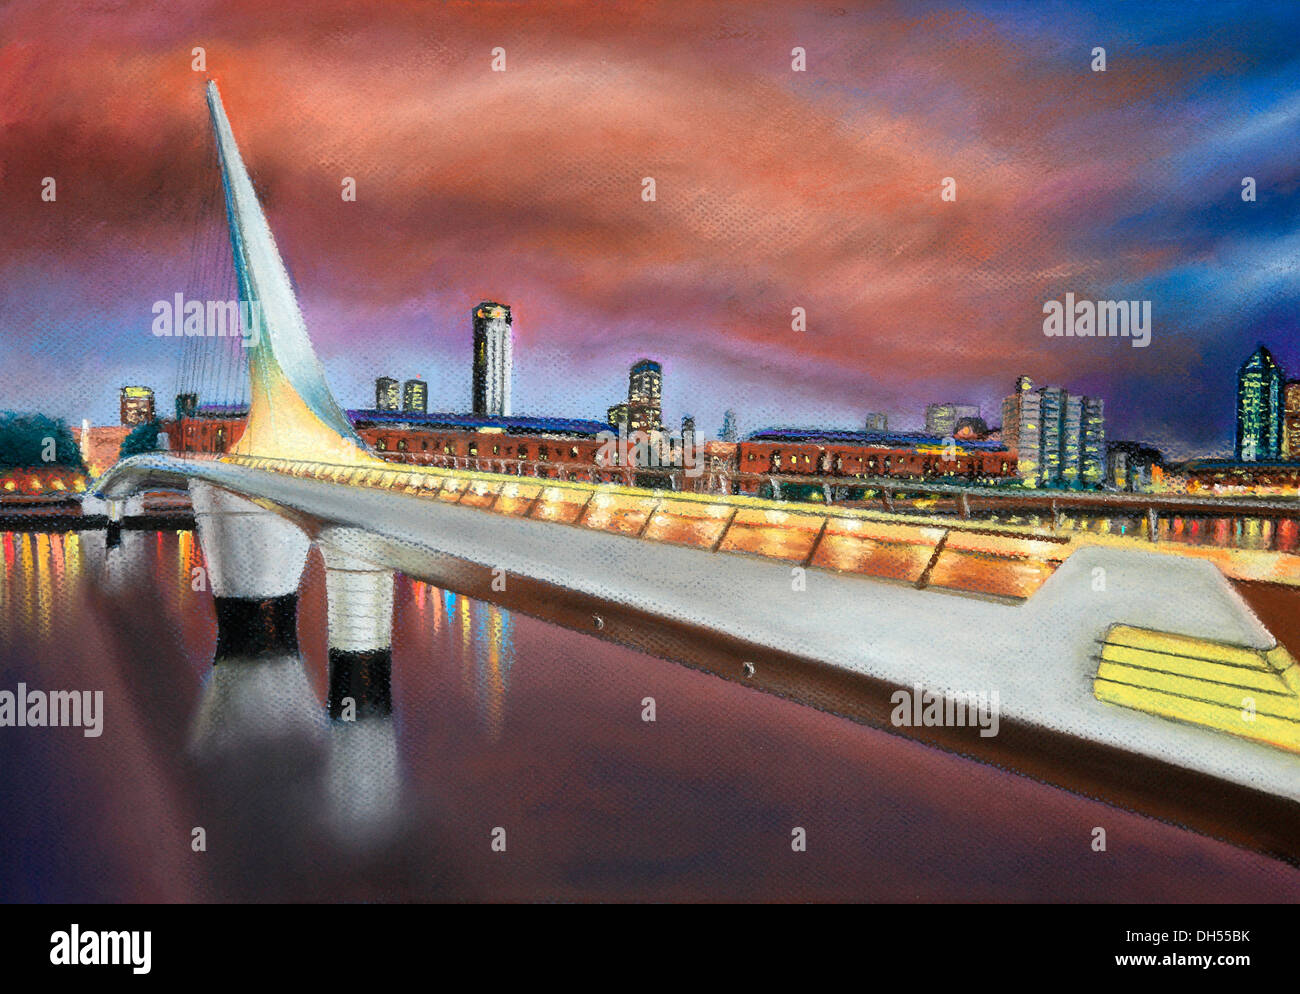 Pastel pintura de Bernardo galmarini: Puente de la mujer vista al atardecer naranja tormentoso, con la silueta de la ciudad en el fondo. Foto de stock